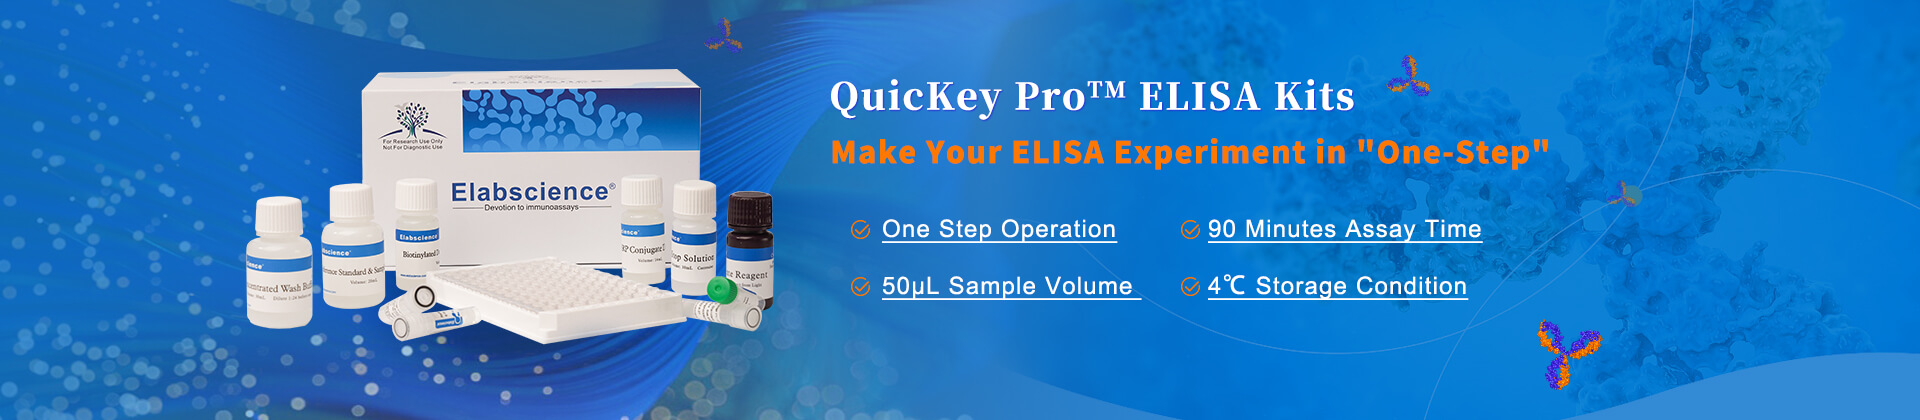 QuicKey Pro ELISA